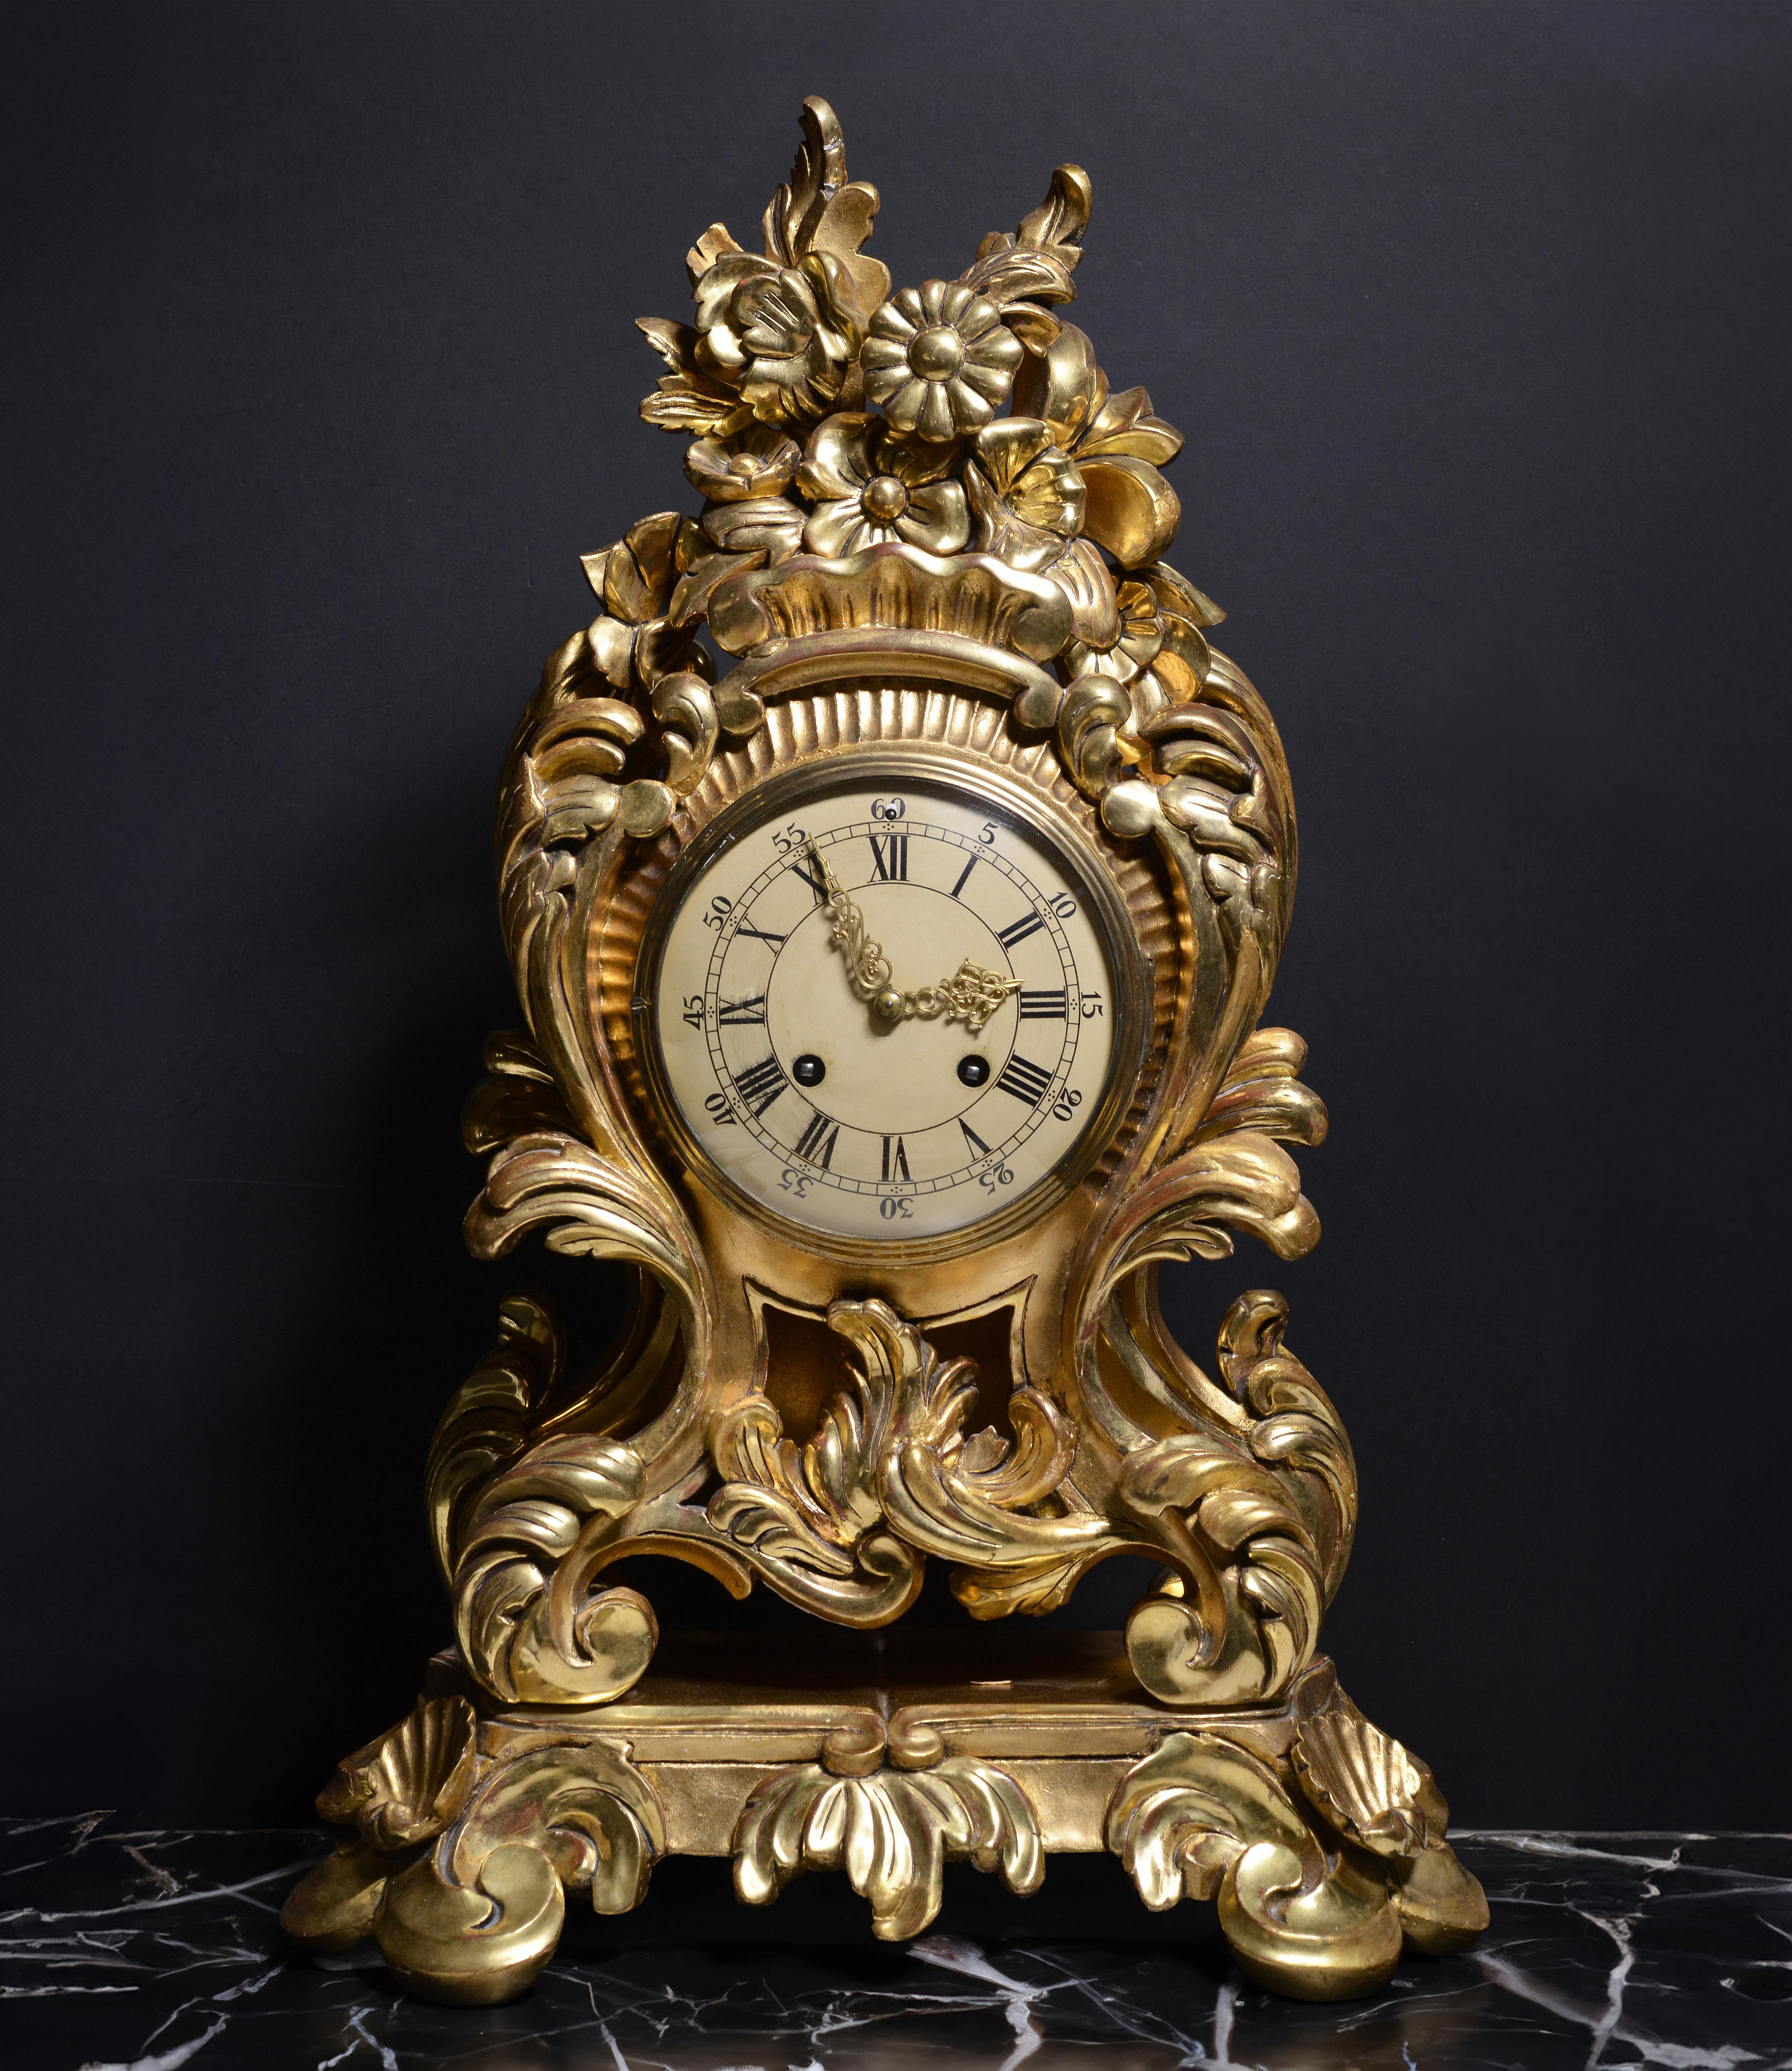 Wunderschöne 25 Zoll (!) hohe handgeschnitzte und blattvergoldete Rokoko-Uhr, hergestellt in 1 Exemplar um 1950 von Westerstrand oder Westerstrand Urfabrik Aktiebolag, einer der ältesten und bekanntesten Firmen Törebodas. Diese zeitlose Uhr ist eine